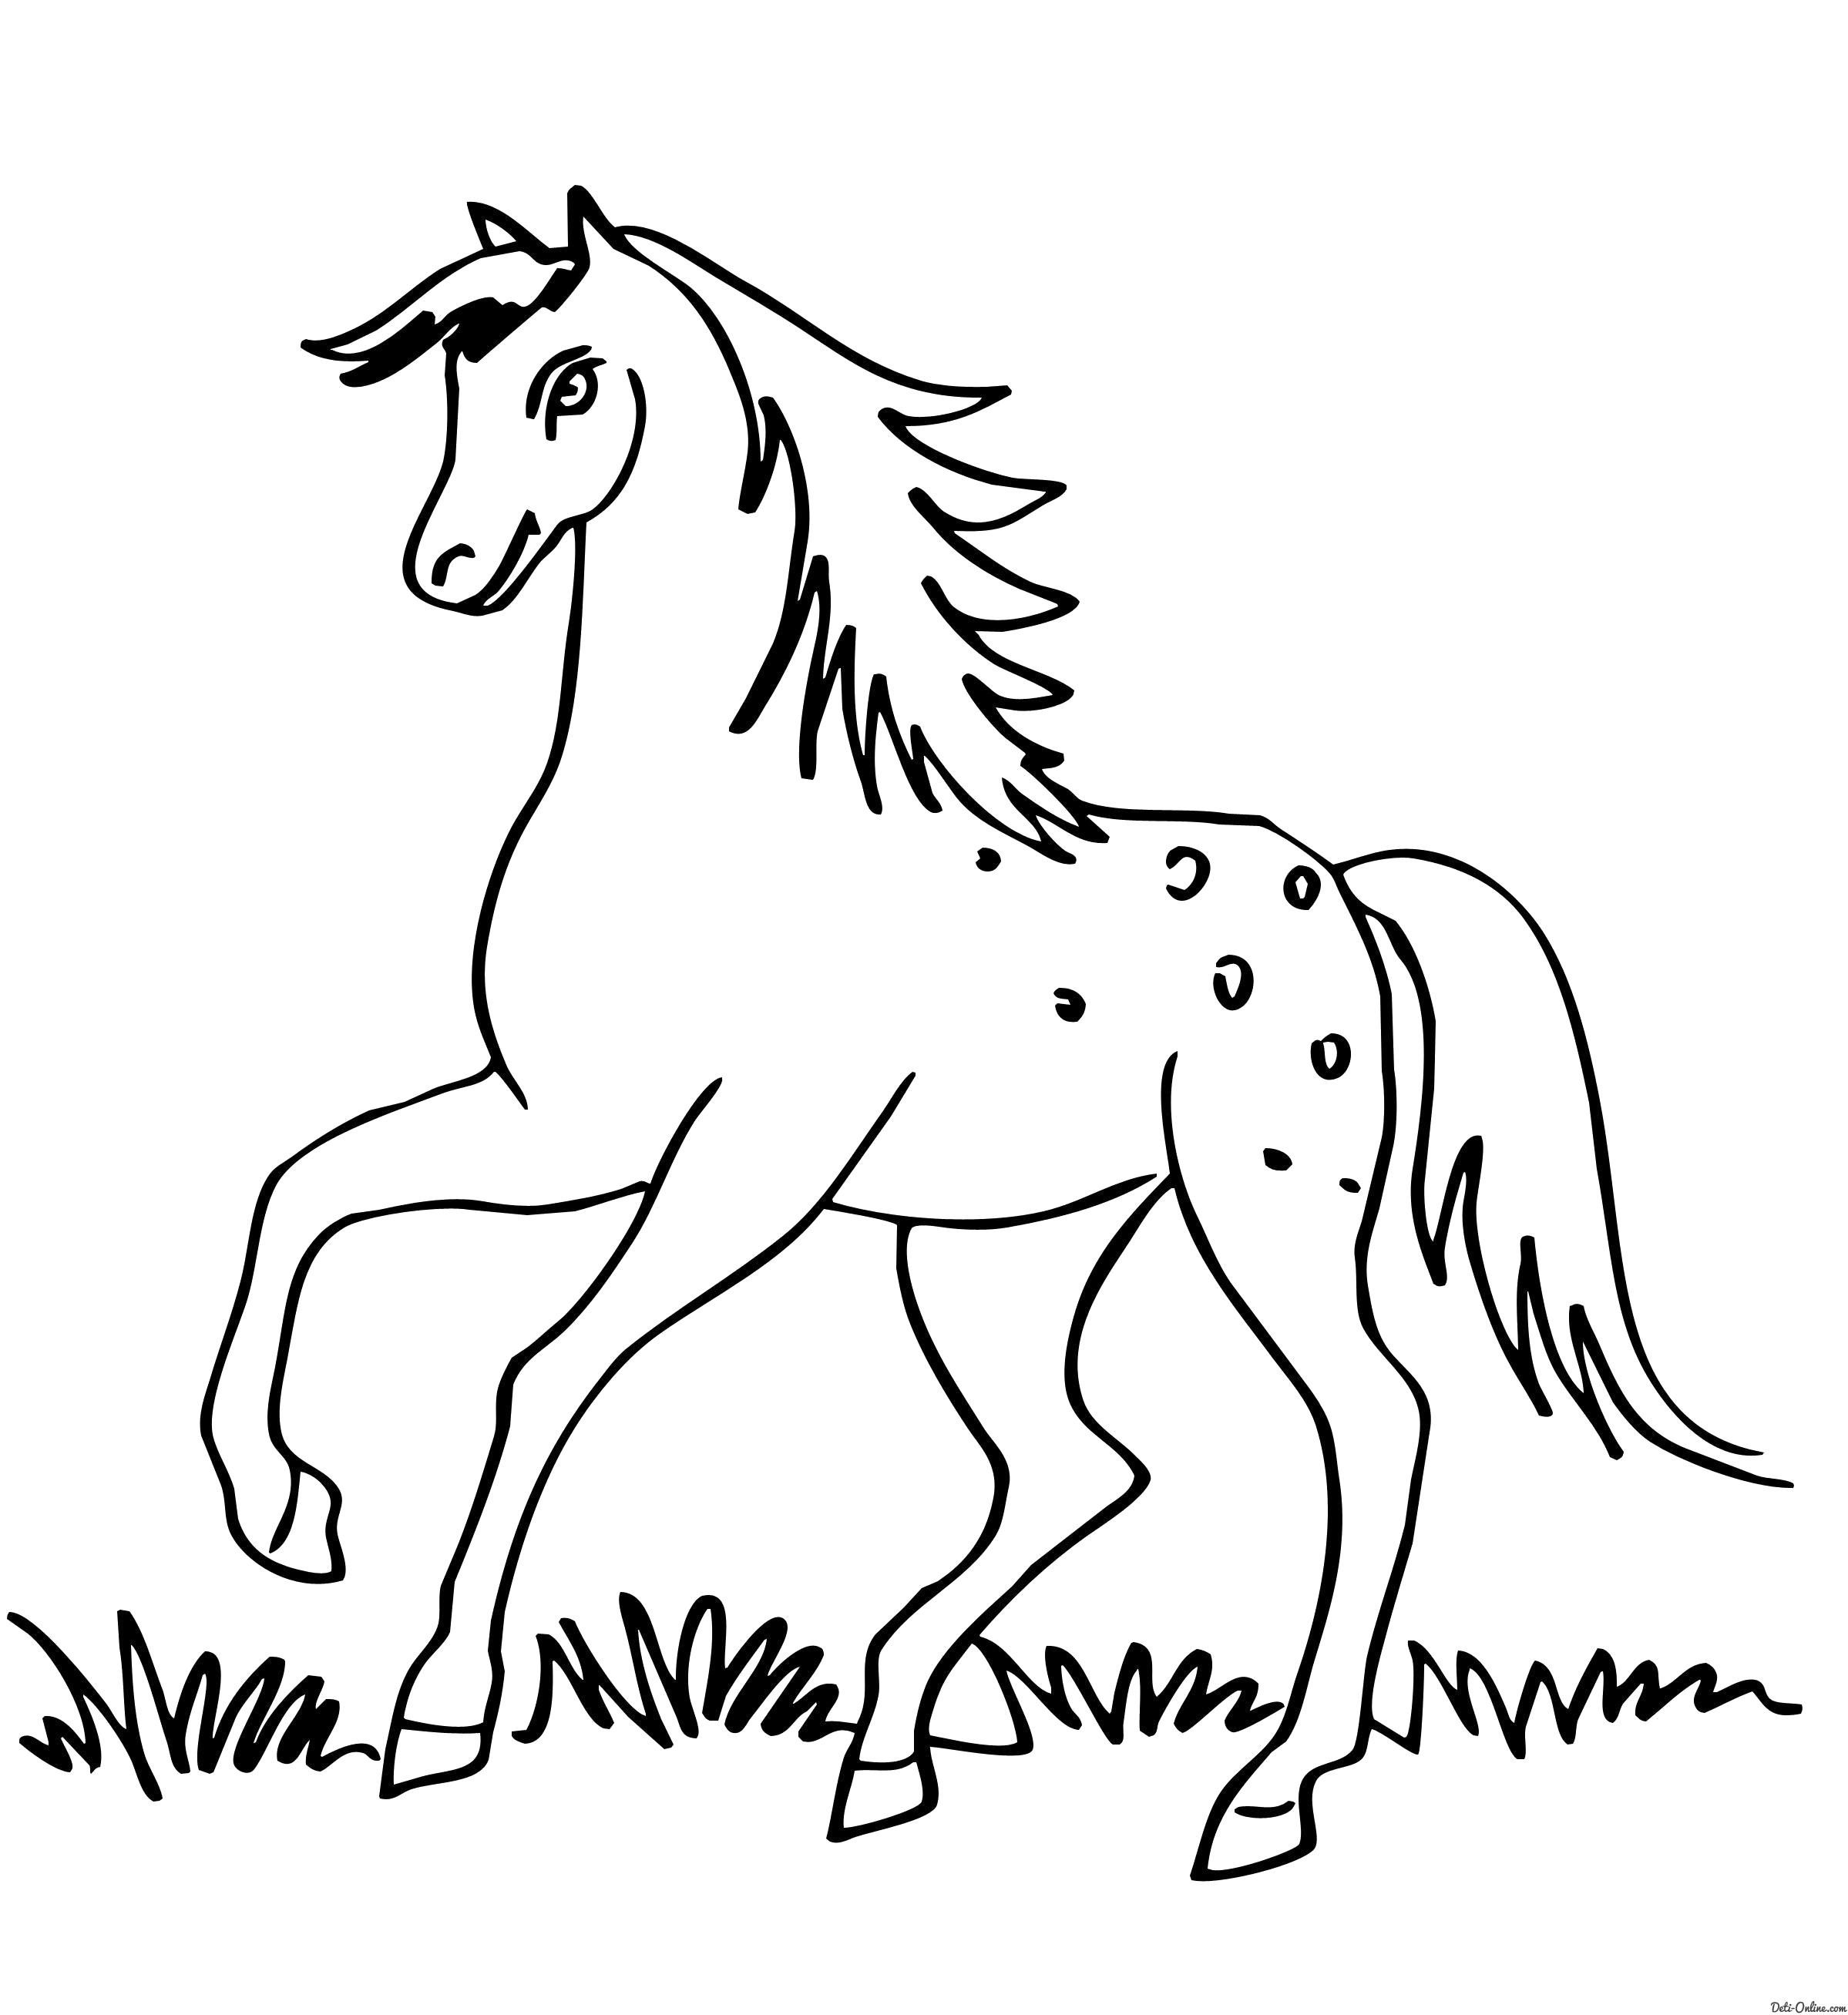 Название: Раскраска  Лошадь скачет по траве. Категория: Домашние животные. Теги: Лошадь.